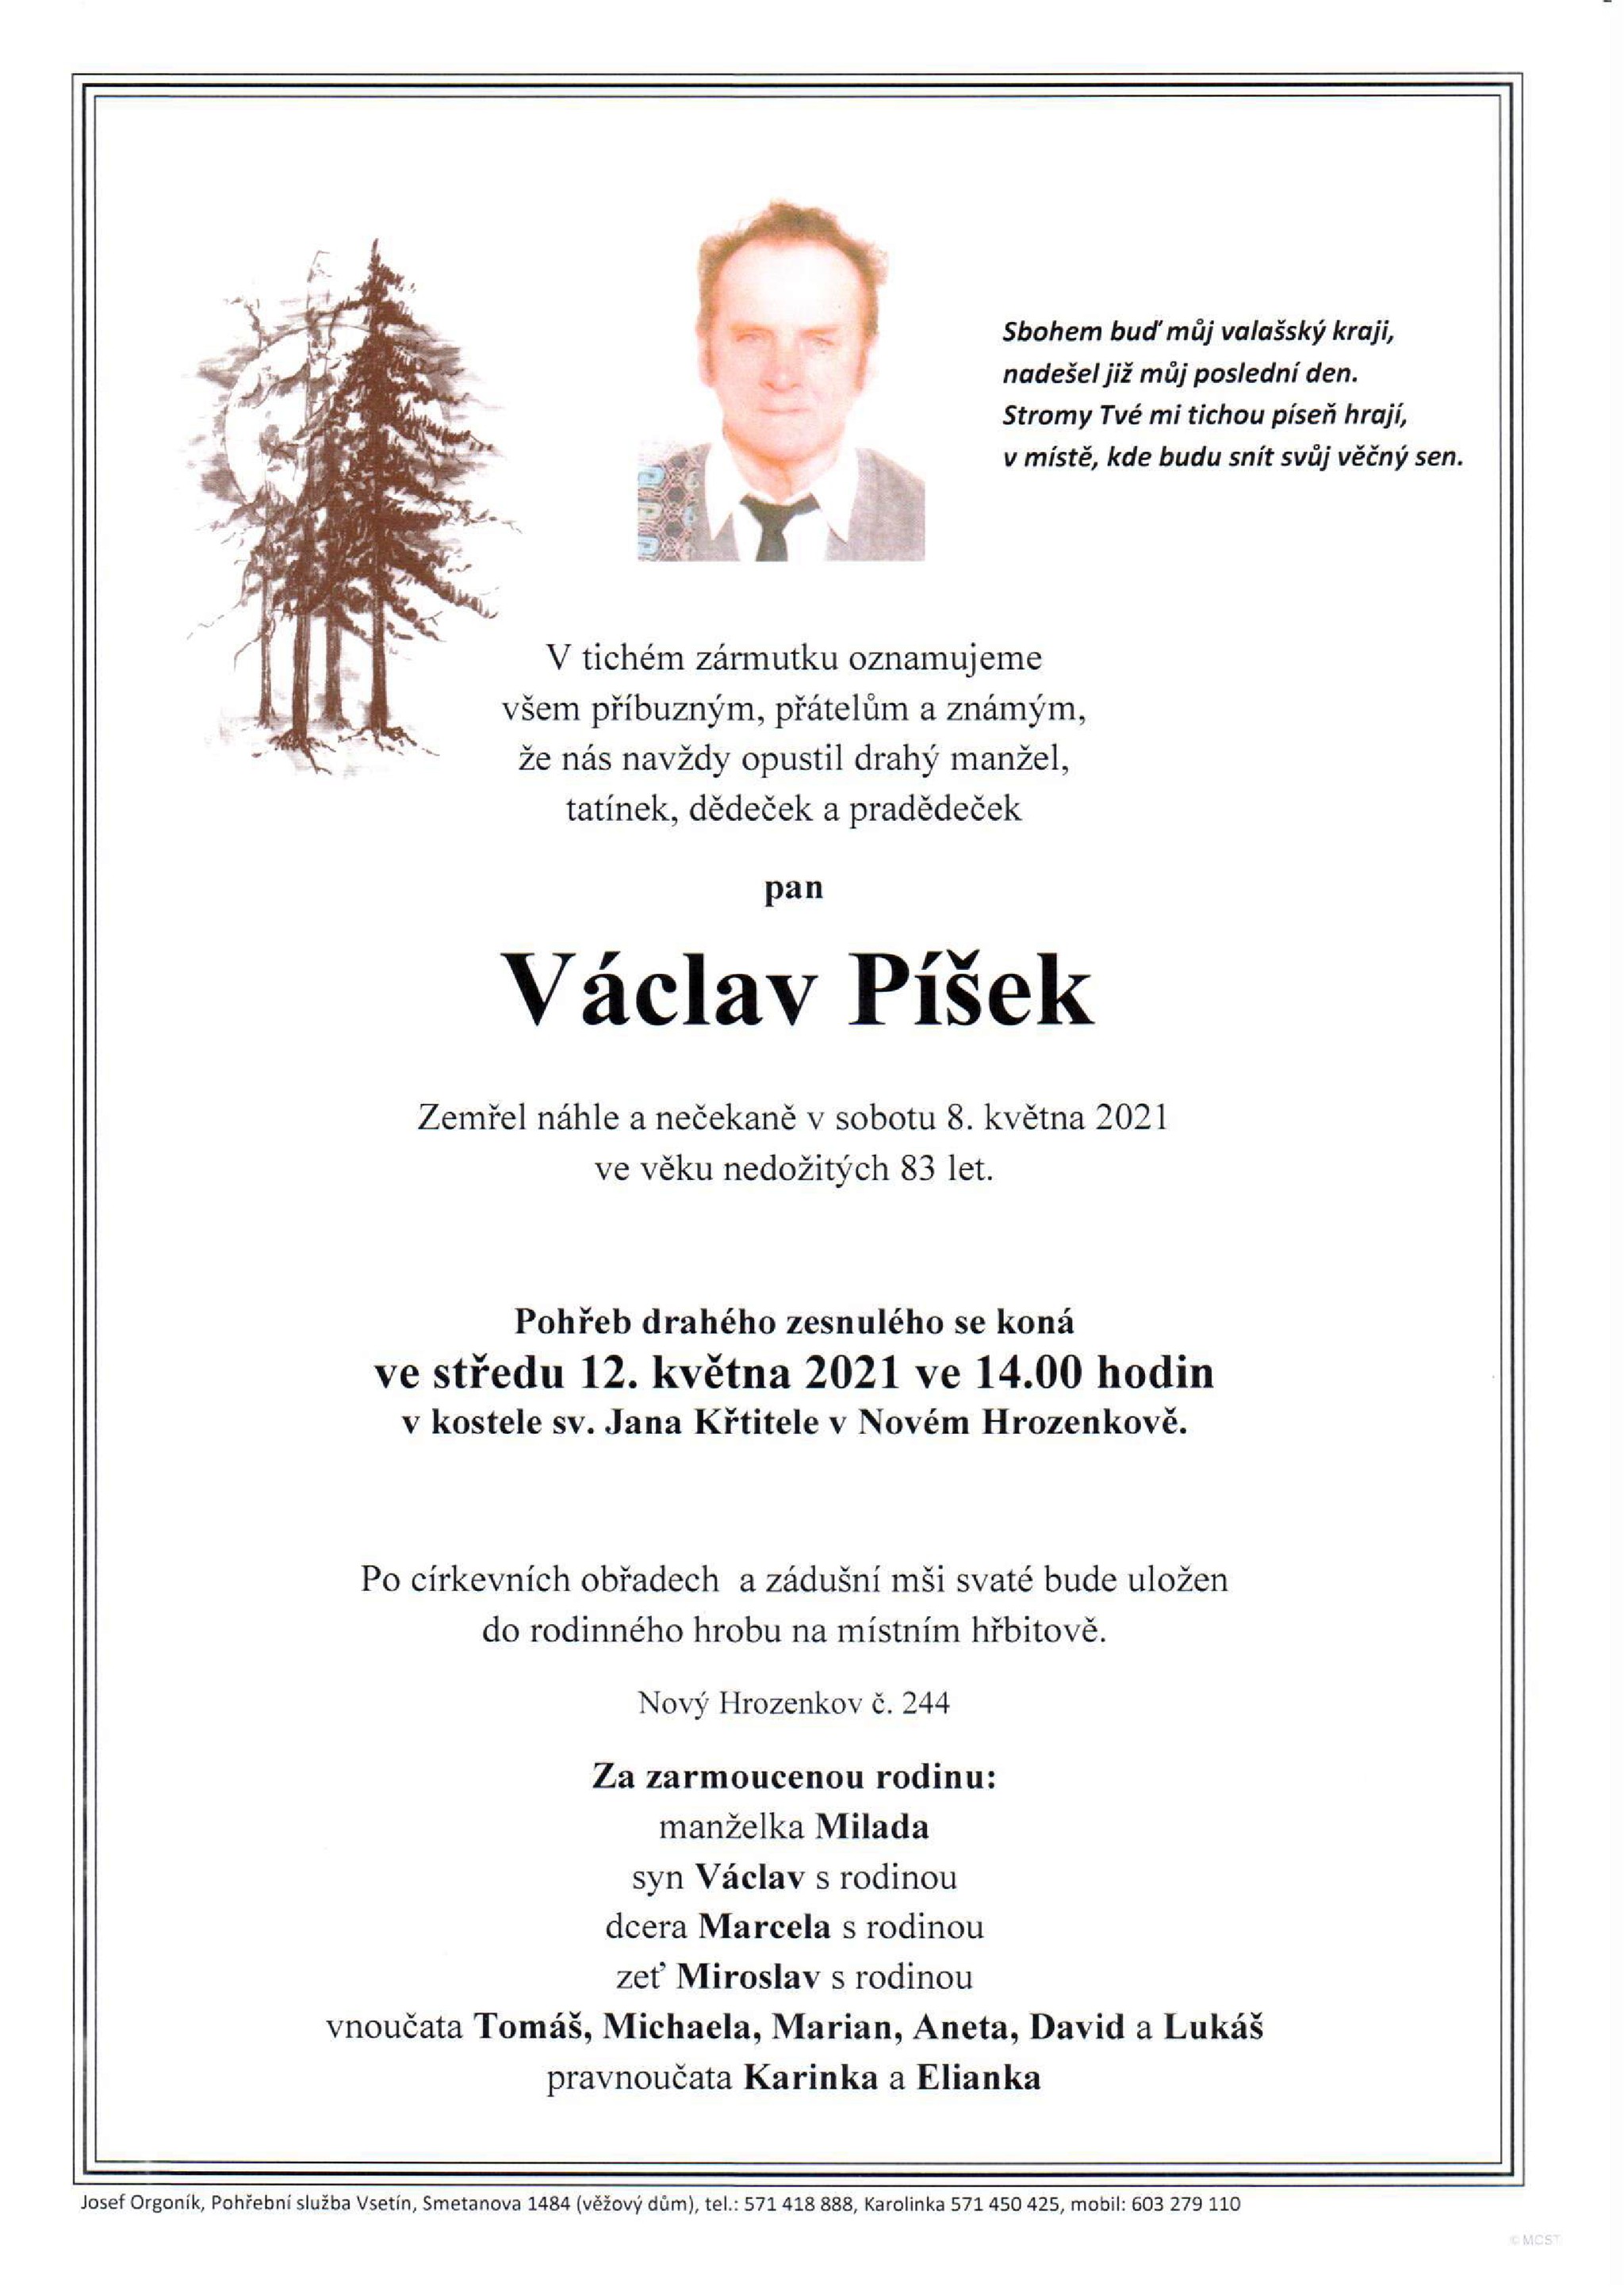 Václav Píšek